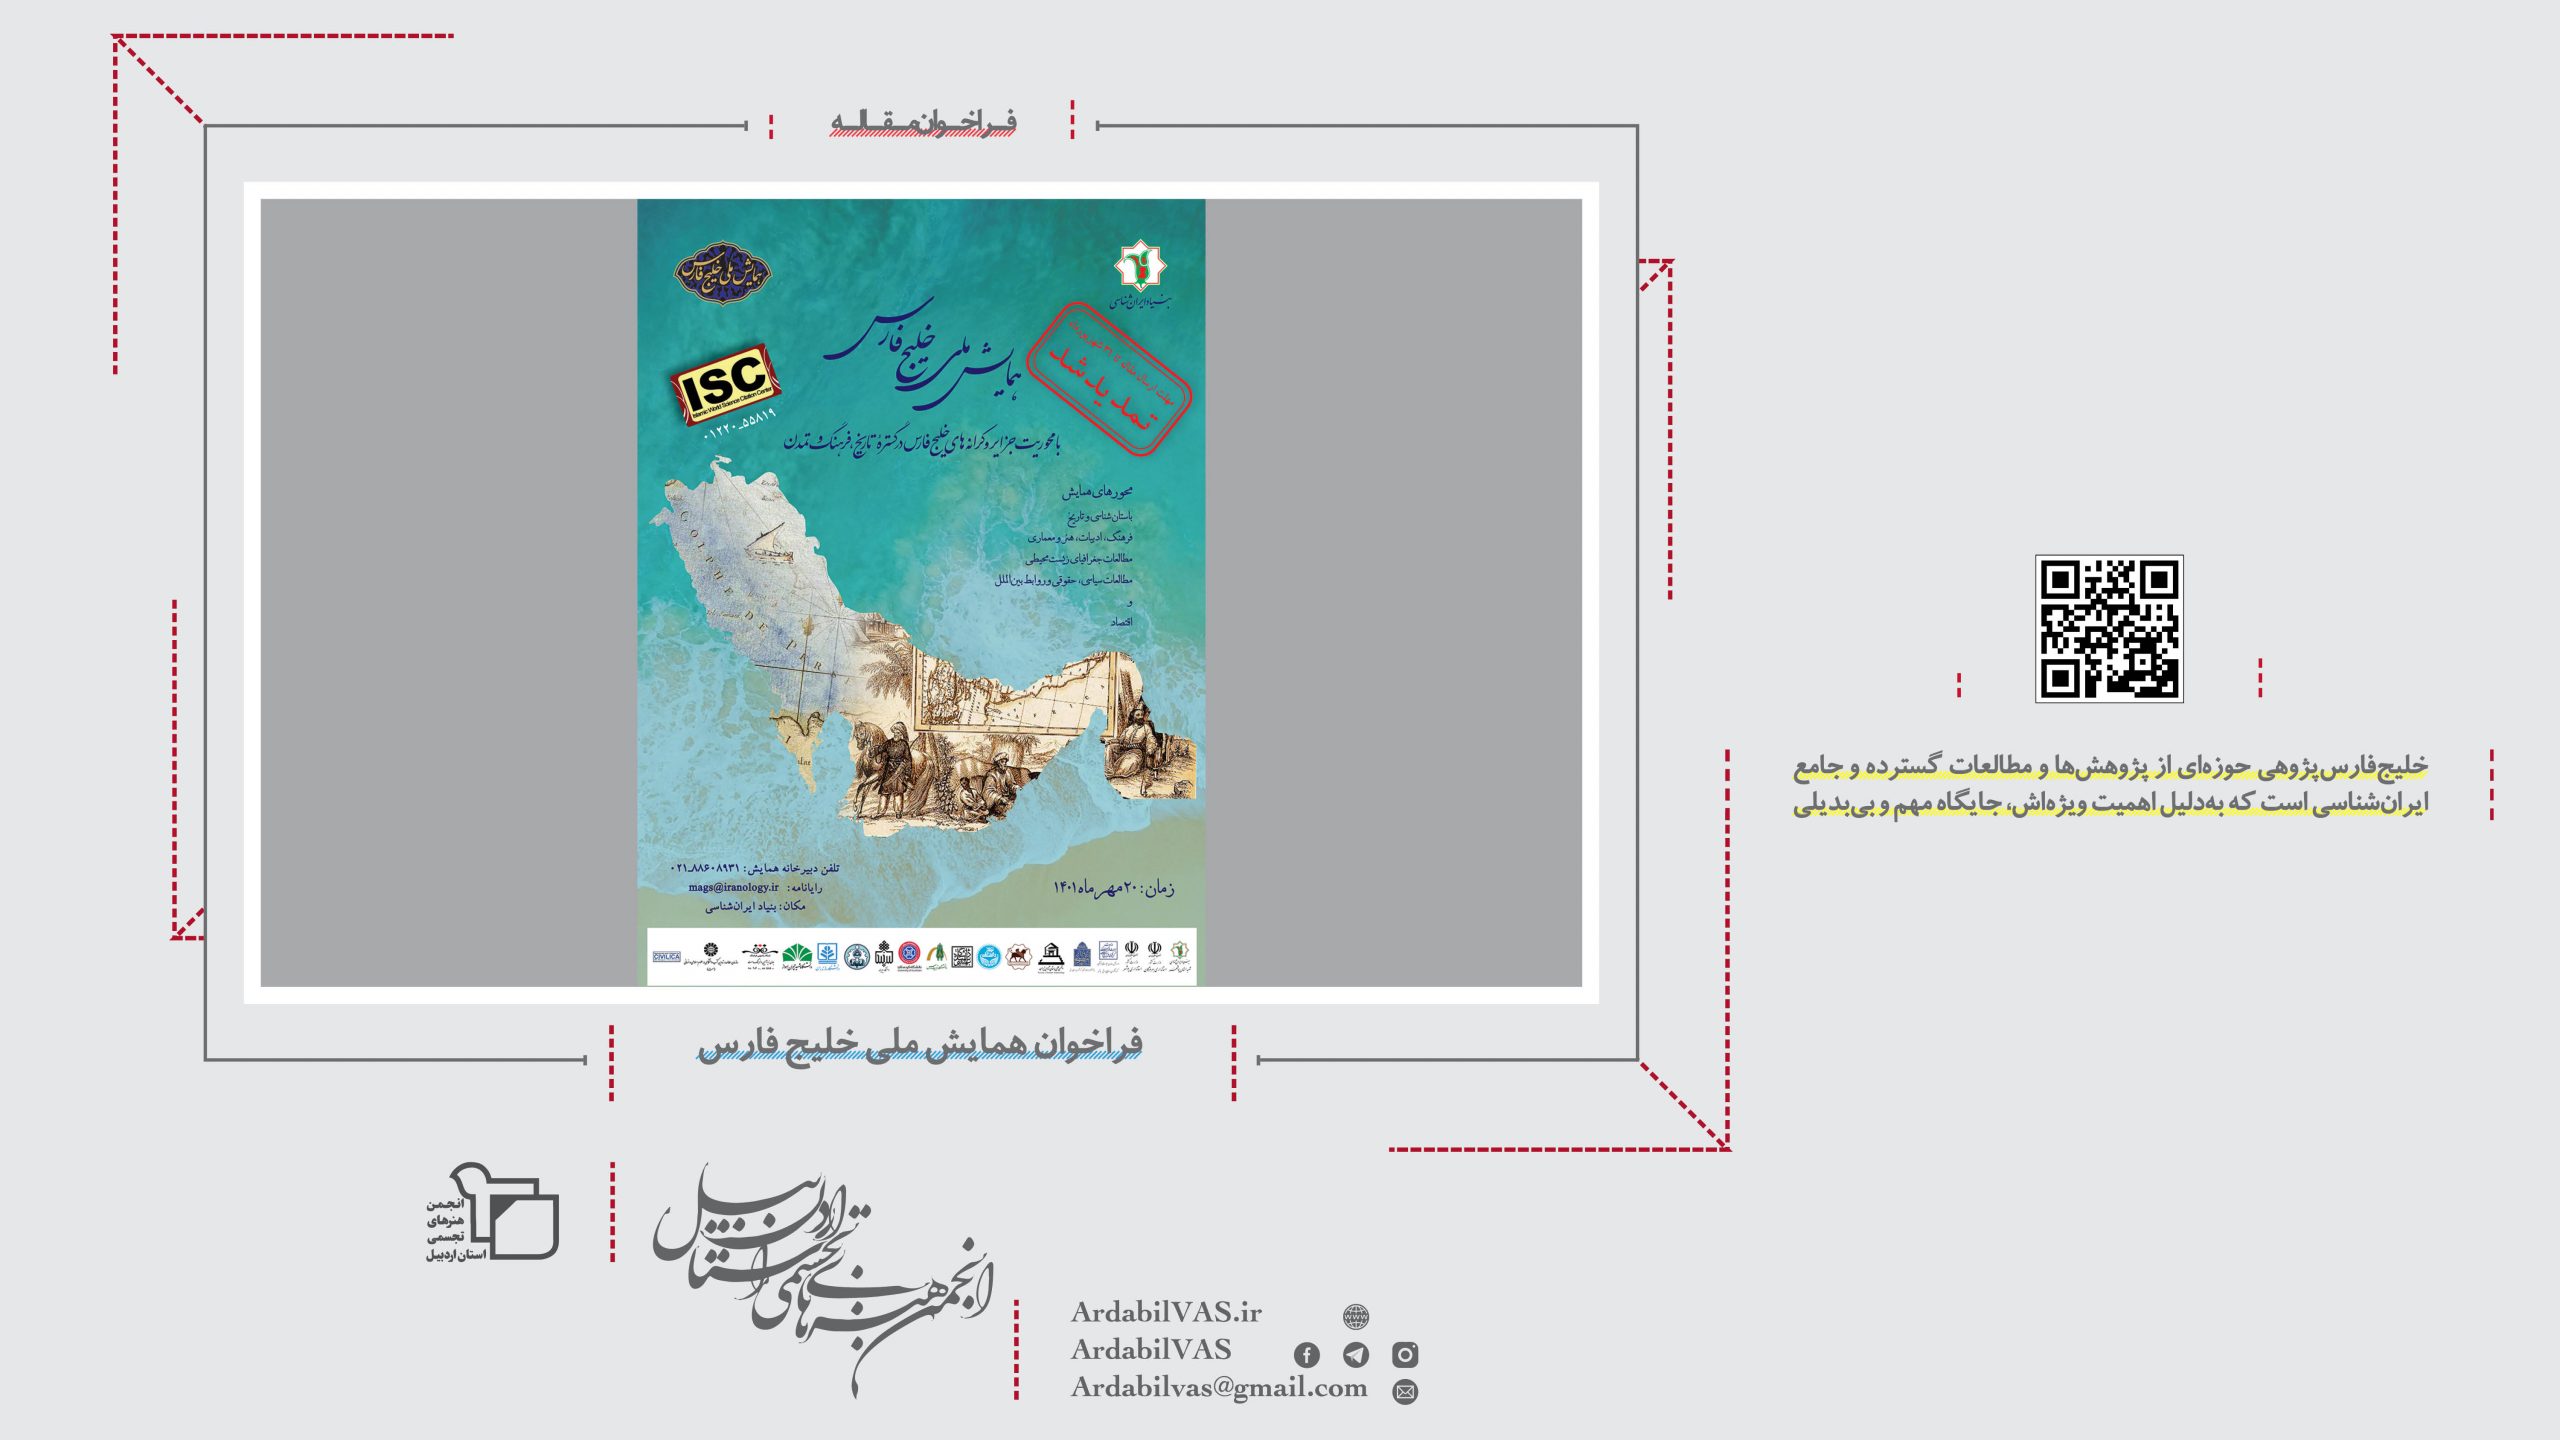 فراخوان همایش ملی خلیج فارس | انجمن هنرهای تجسمی استان اردبیل ـ جامعه تخصصی هنرهای تجسمی